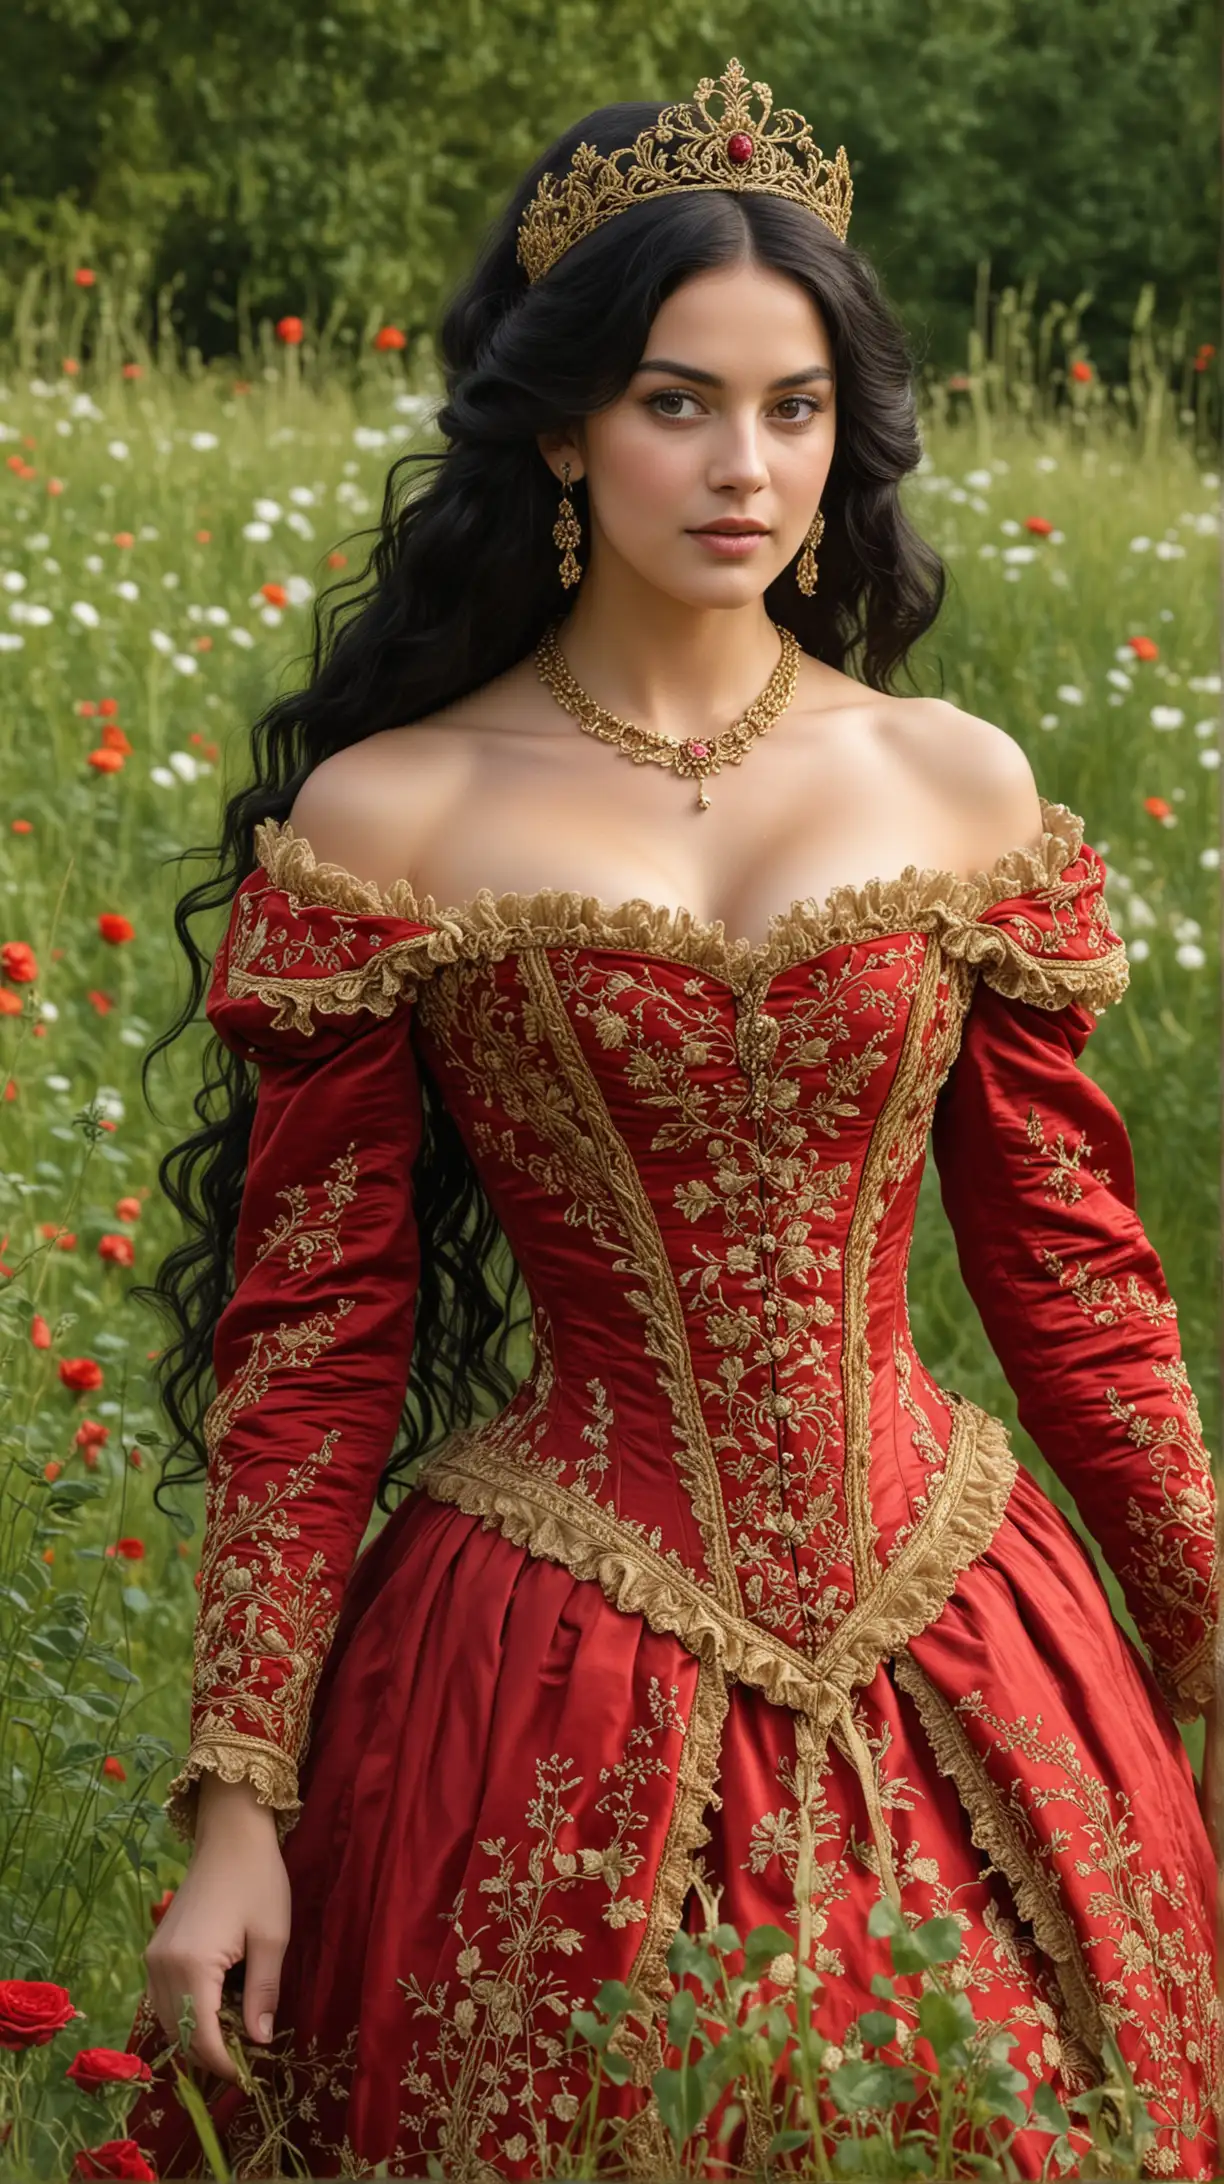 принцесса в платье 19 века красное ,вышытое  золотом,пышное ,корсет ,кудрявые длинные чёрные волосы, декольте,на голове золотая большая корона ,на шее колье идёт по зелёной густой траве , вокруг цветут розы